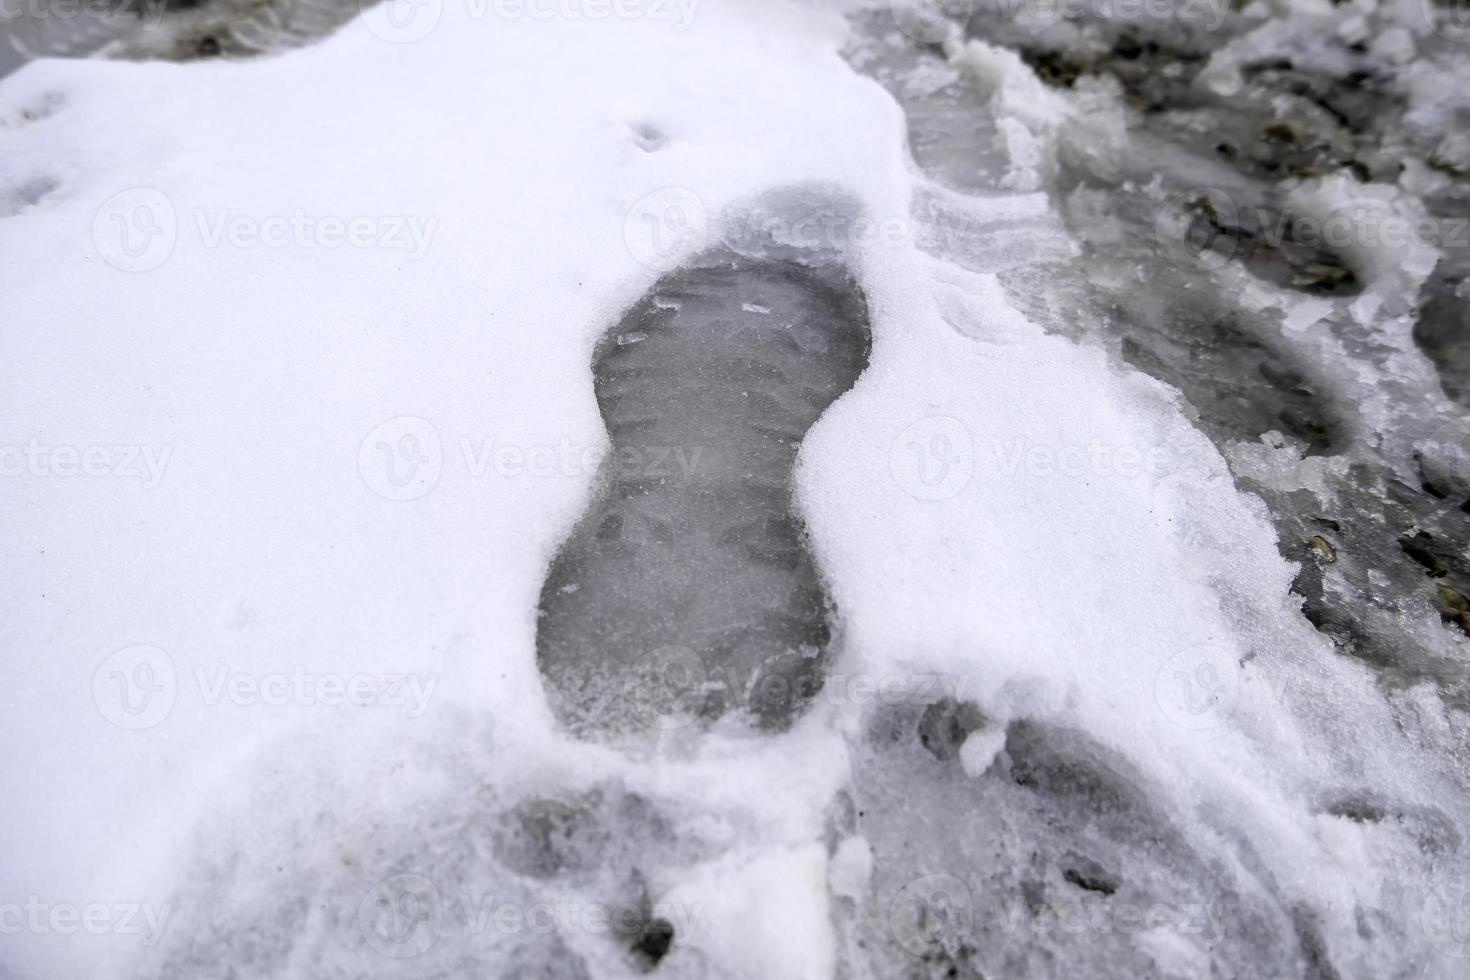 empreintes de pas dans la neige photo